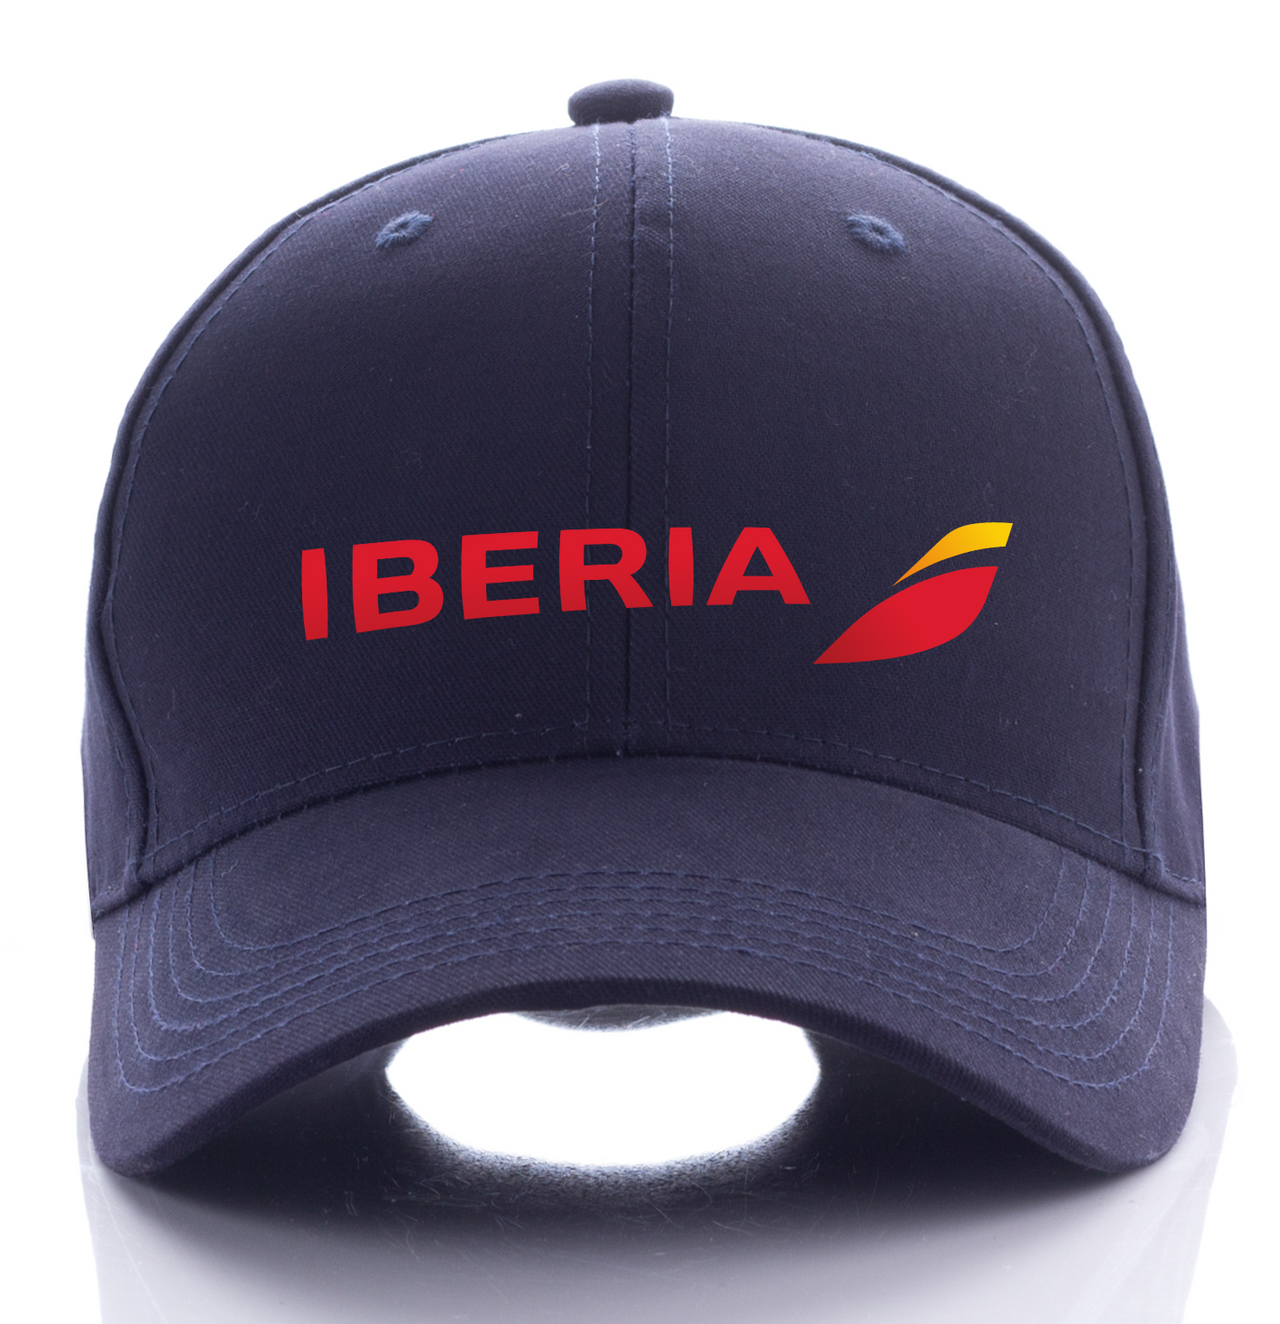 IBERIA AIRLINE DESIGNED CAP